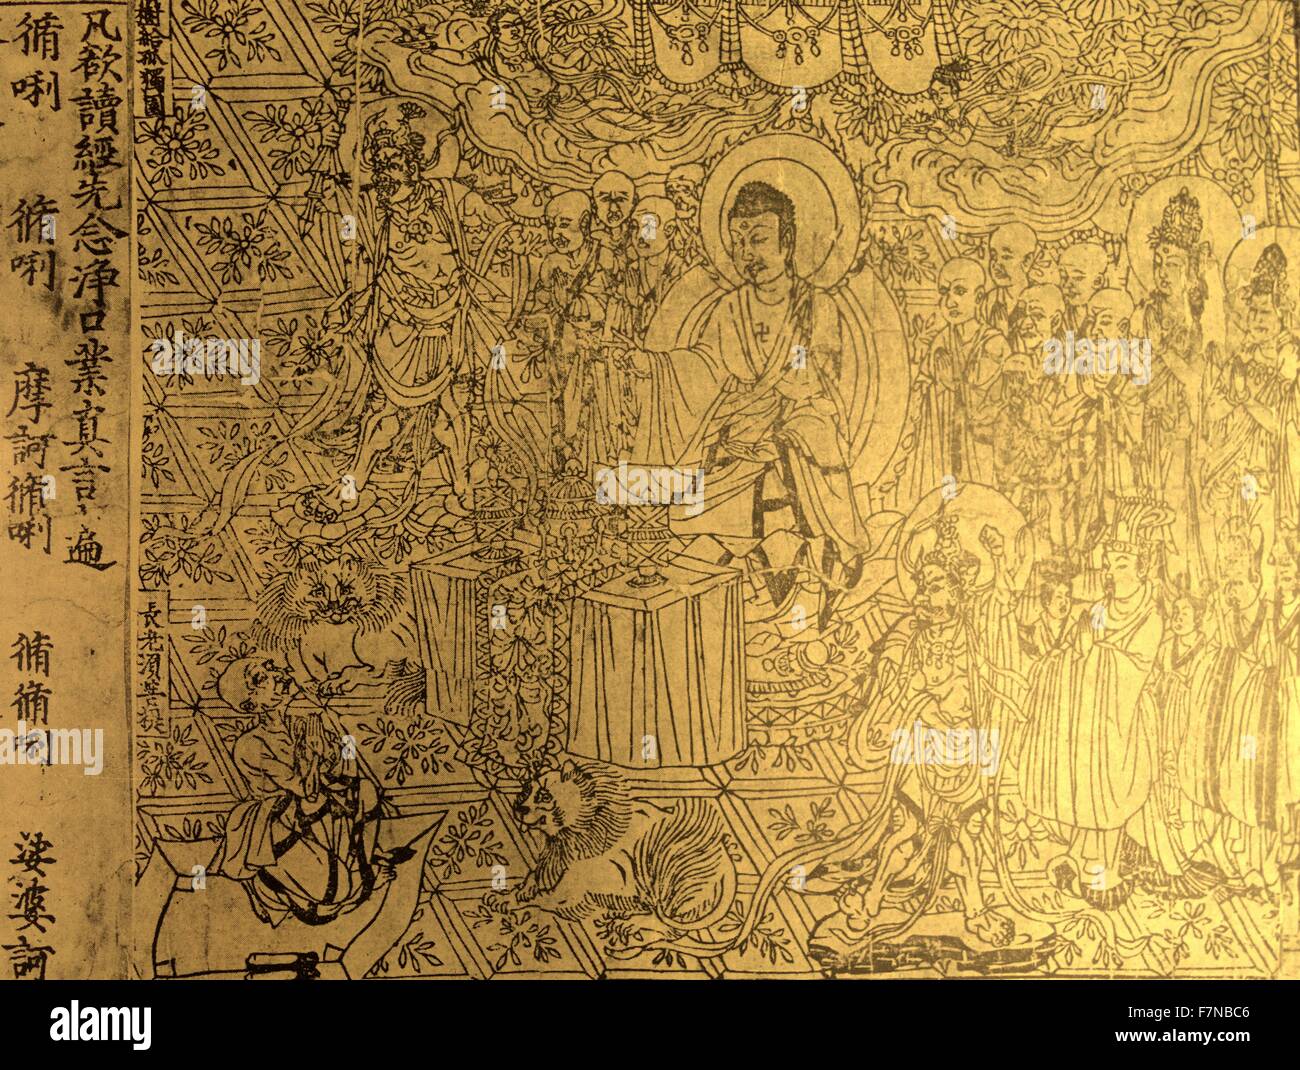 El Diamante Sūtra. Un budista Mahāyāna sūtra, encontrado entre los  manuscritos de Dunhuang, en China, a principios del siglo XX por Aurel  Stein. El Sutra data del año 868 D.C Fotografía de